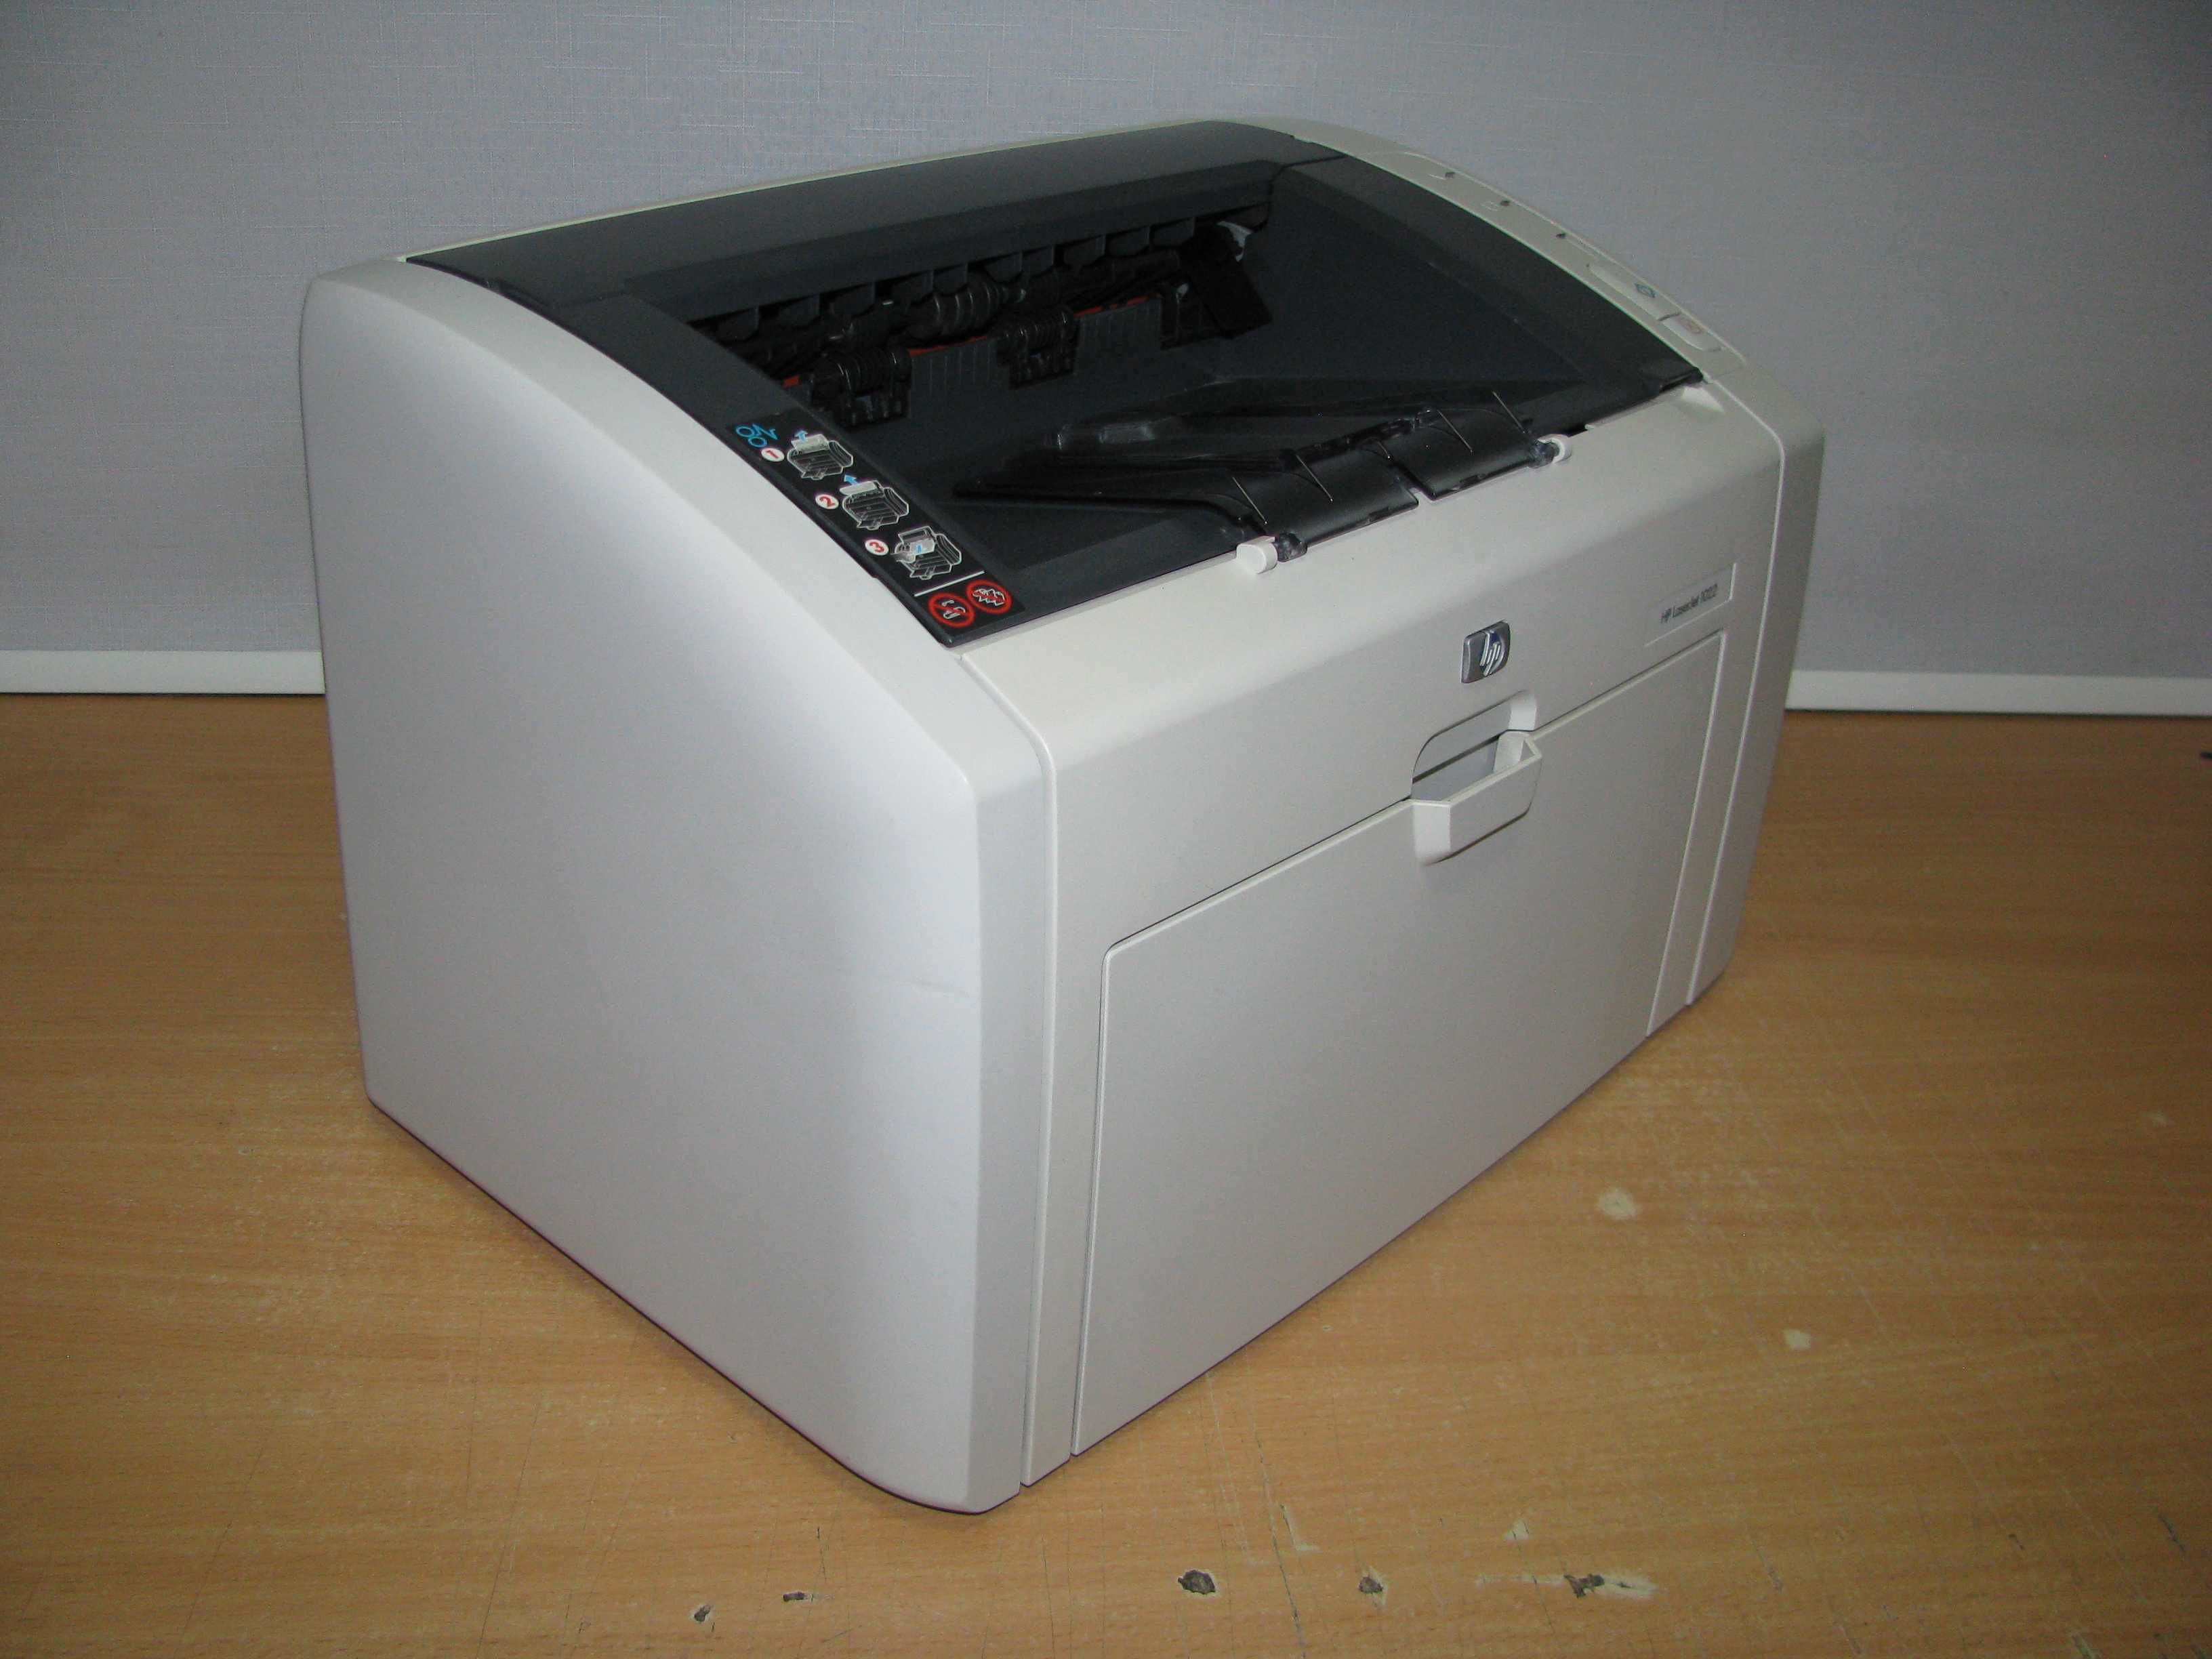 Принтер HP LaserJet 1022 з Європи Ідеальний стан